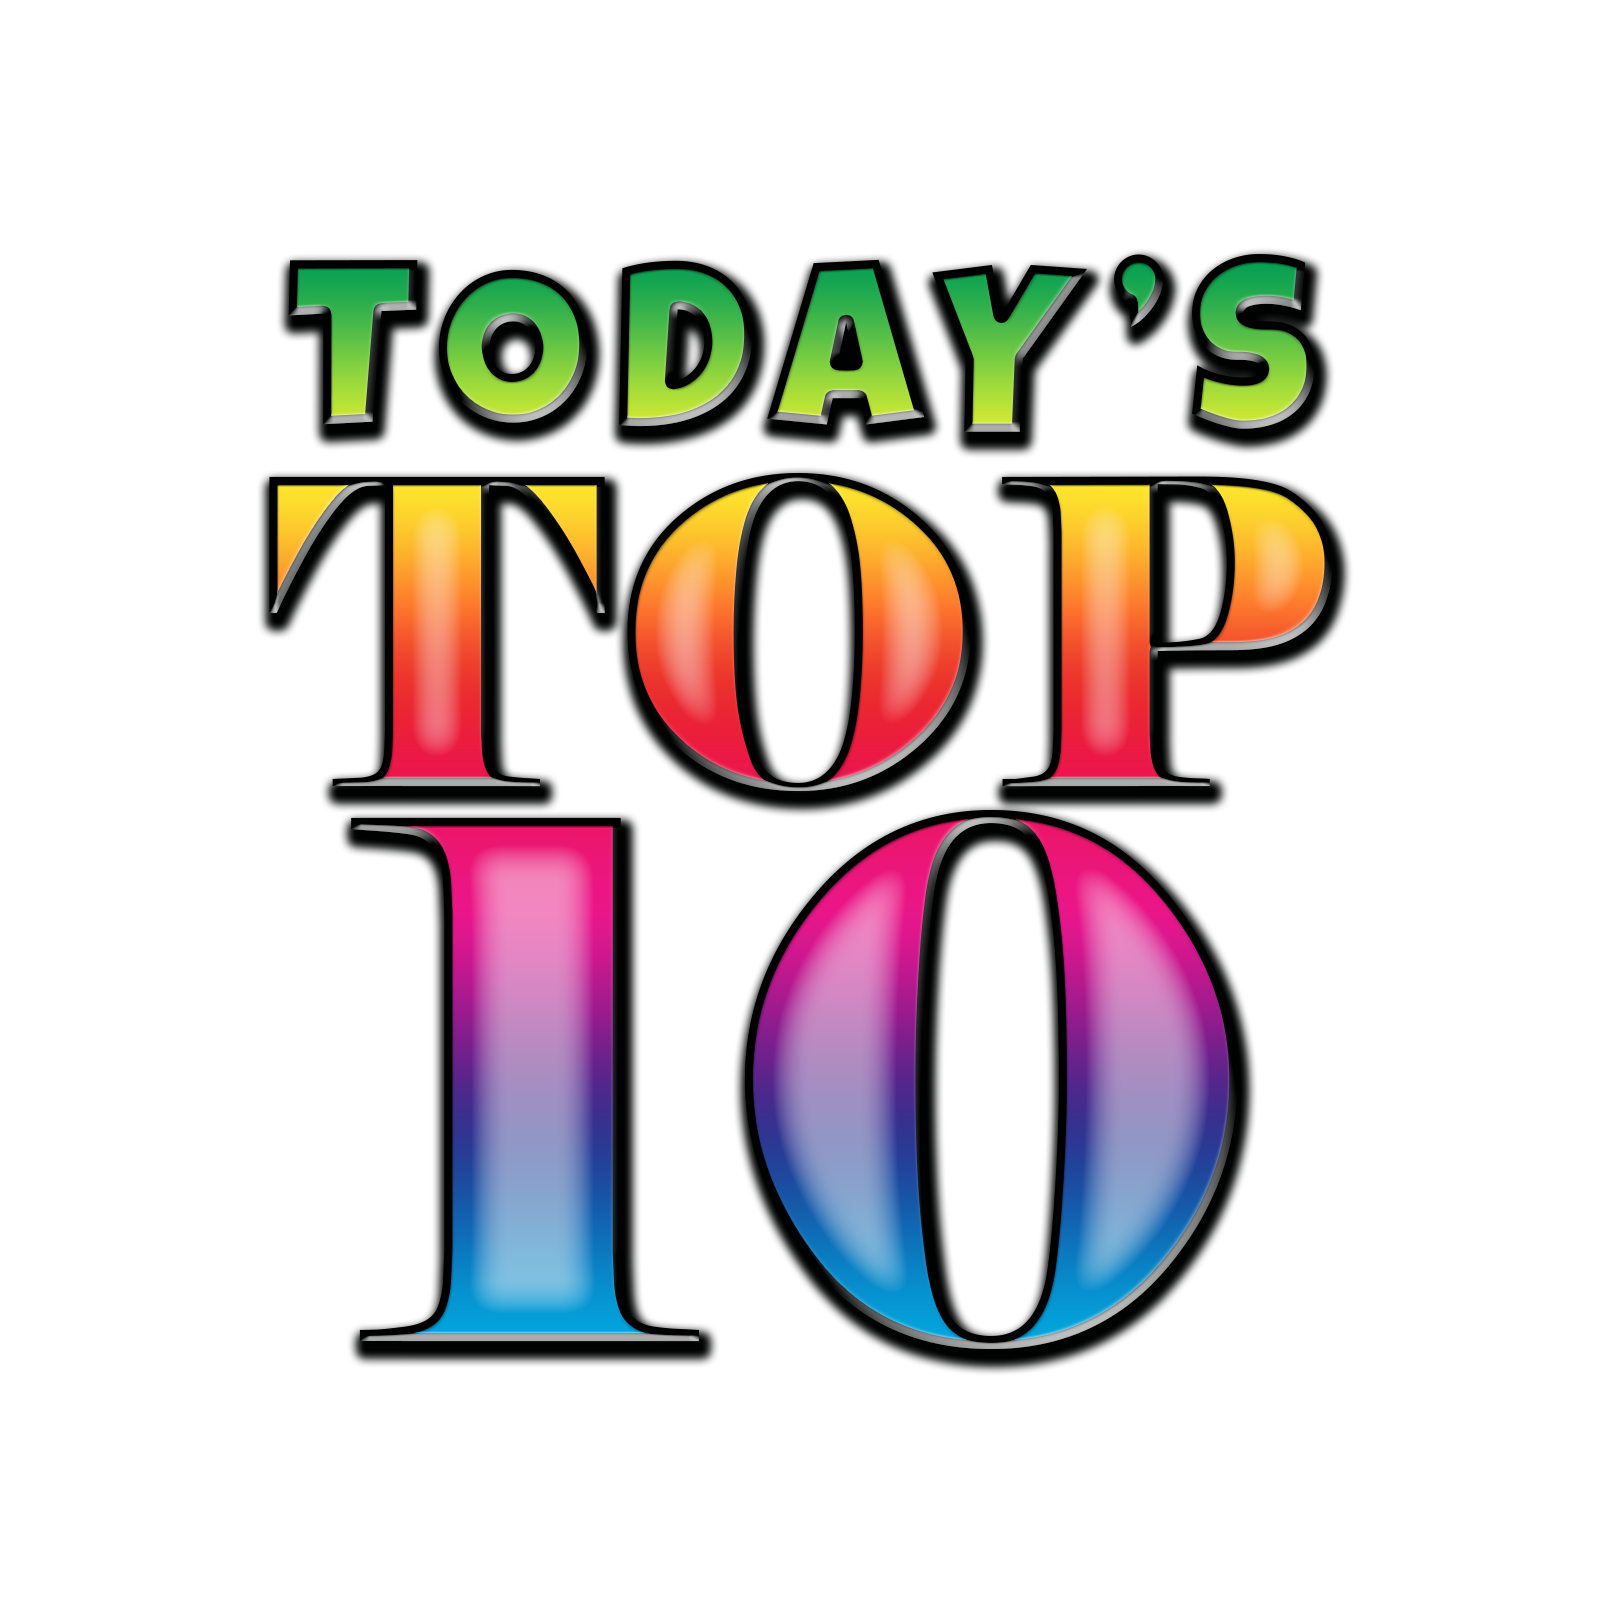 Todays-Top-10